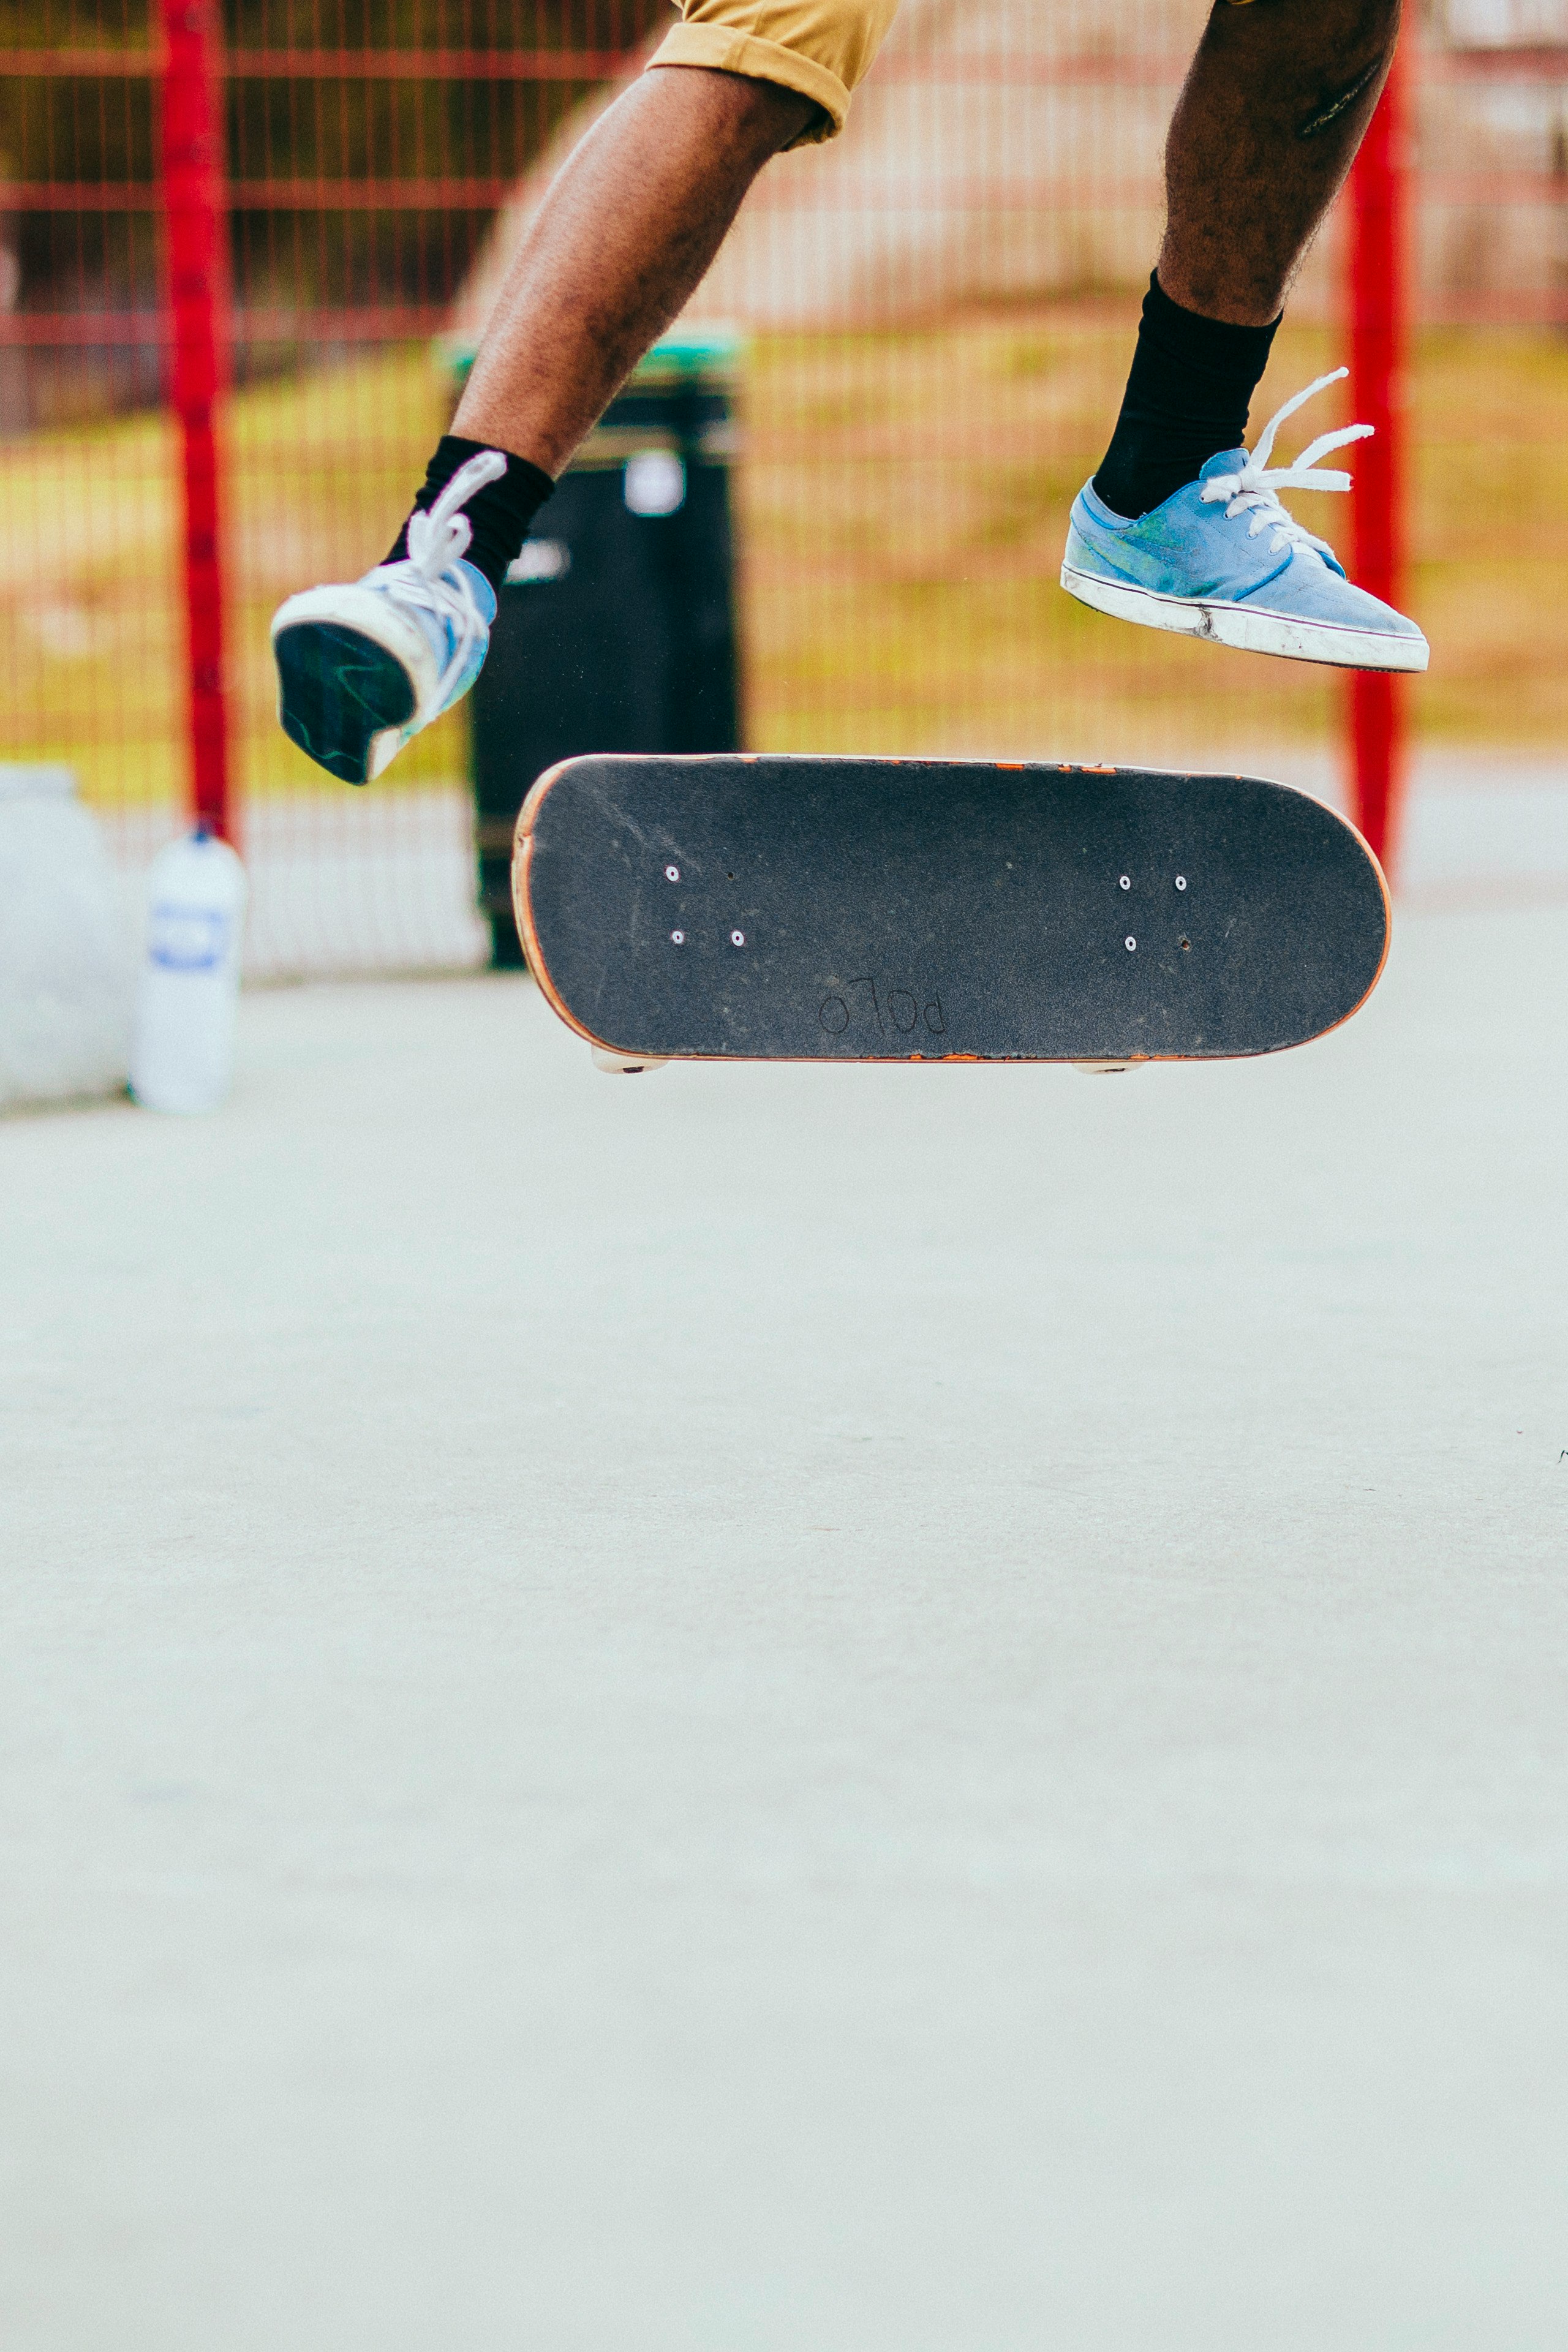 man playing skateboard while performing flip tricks